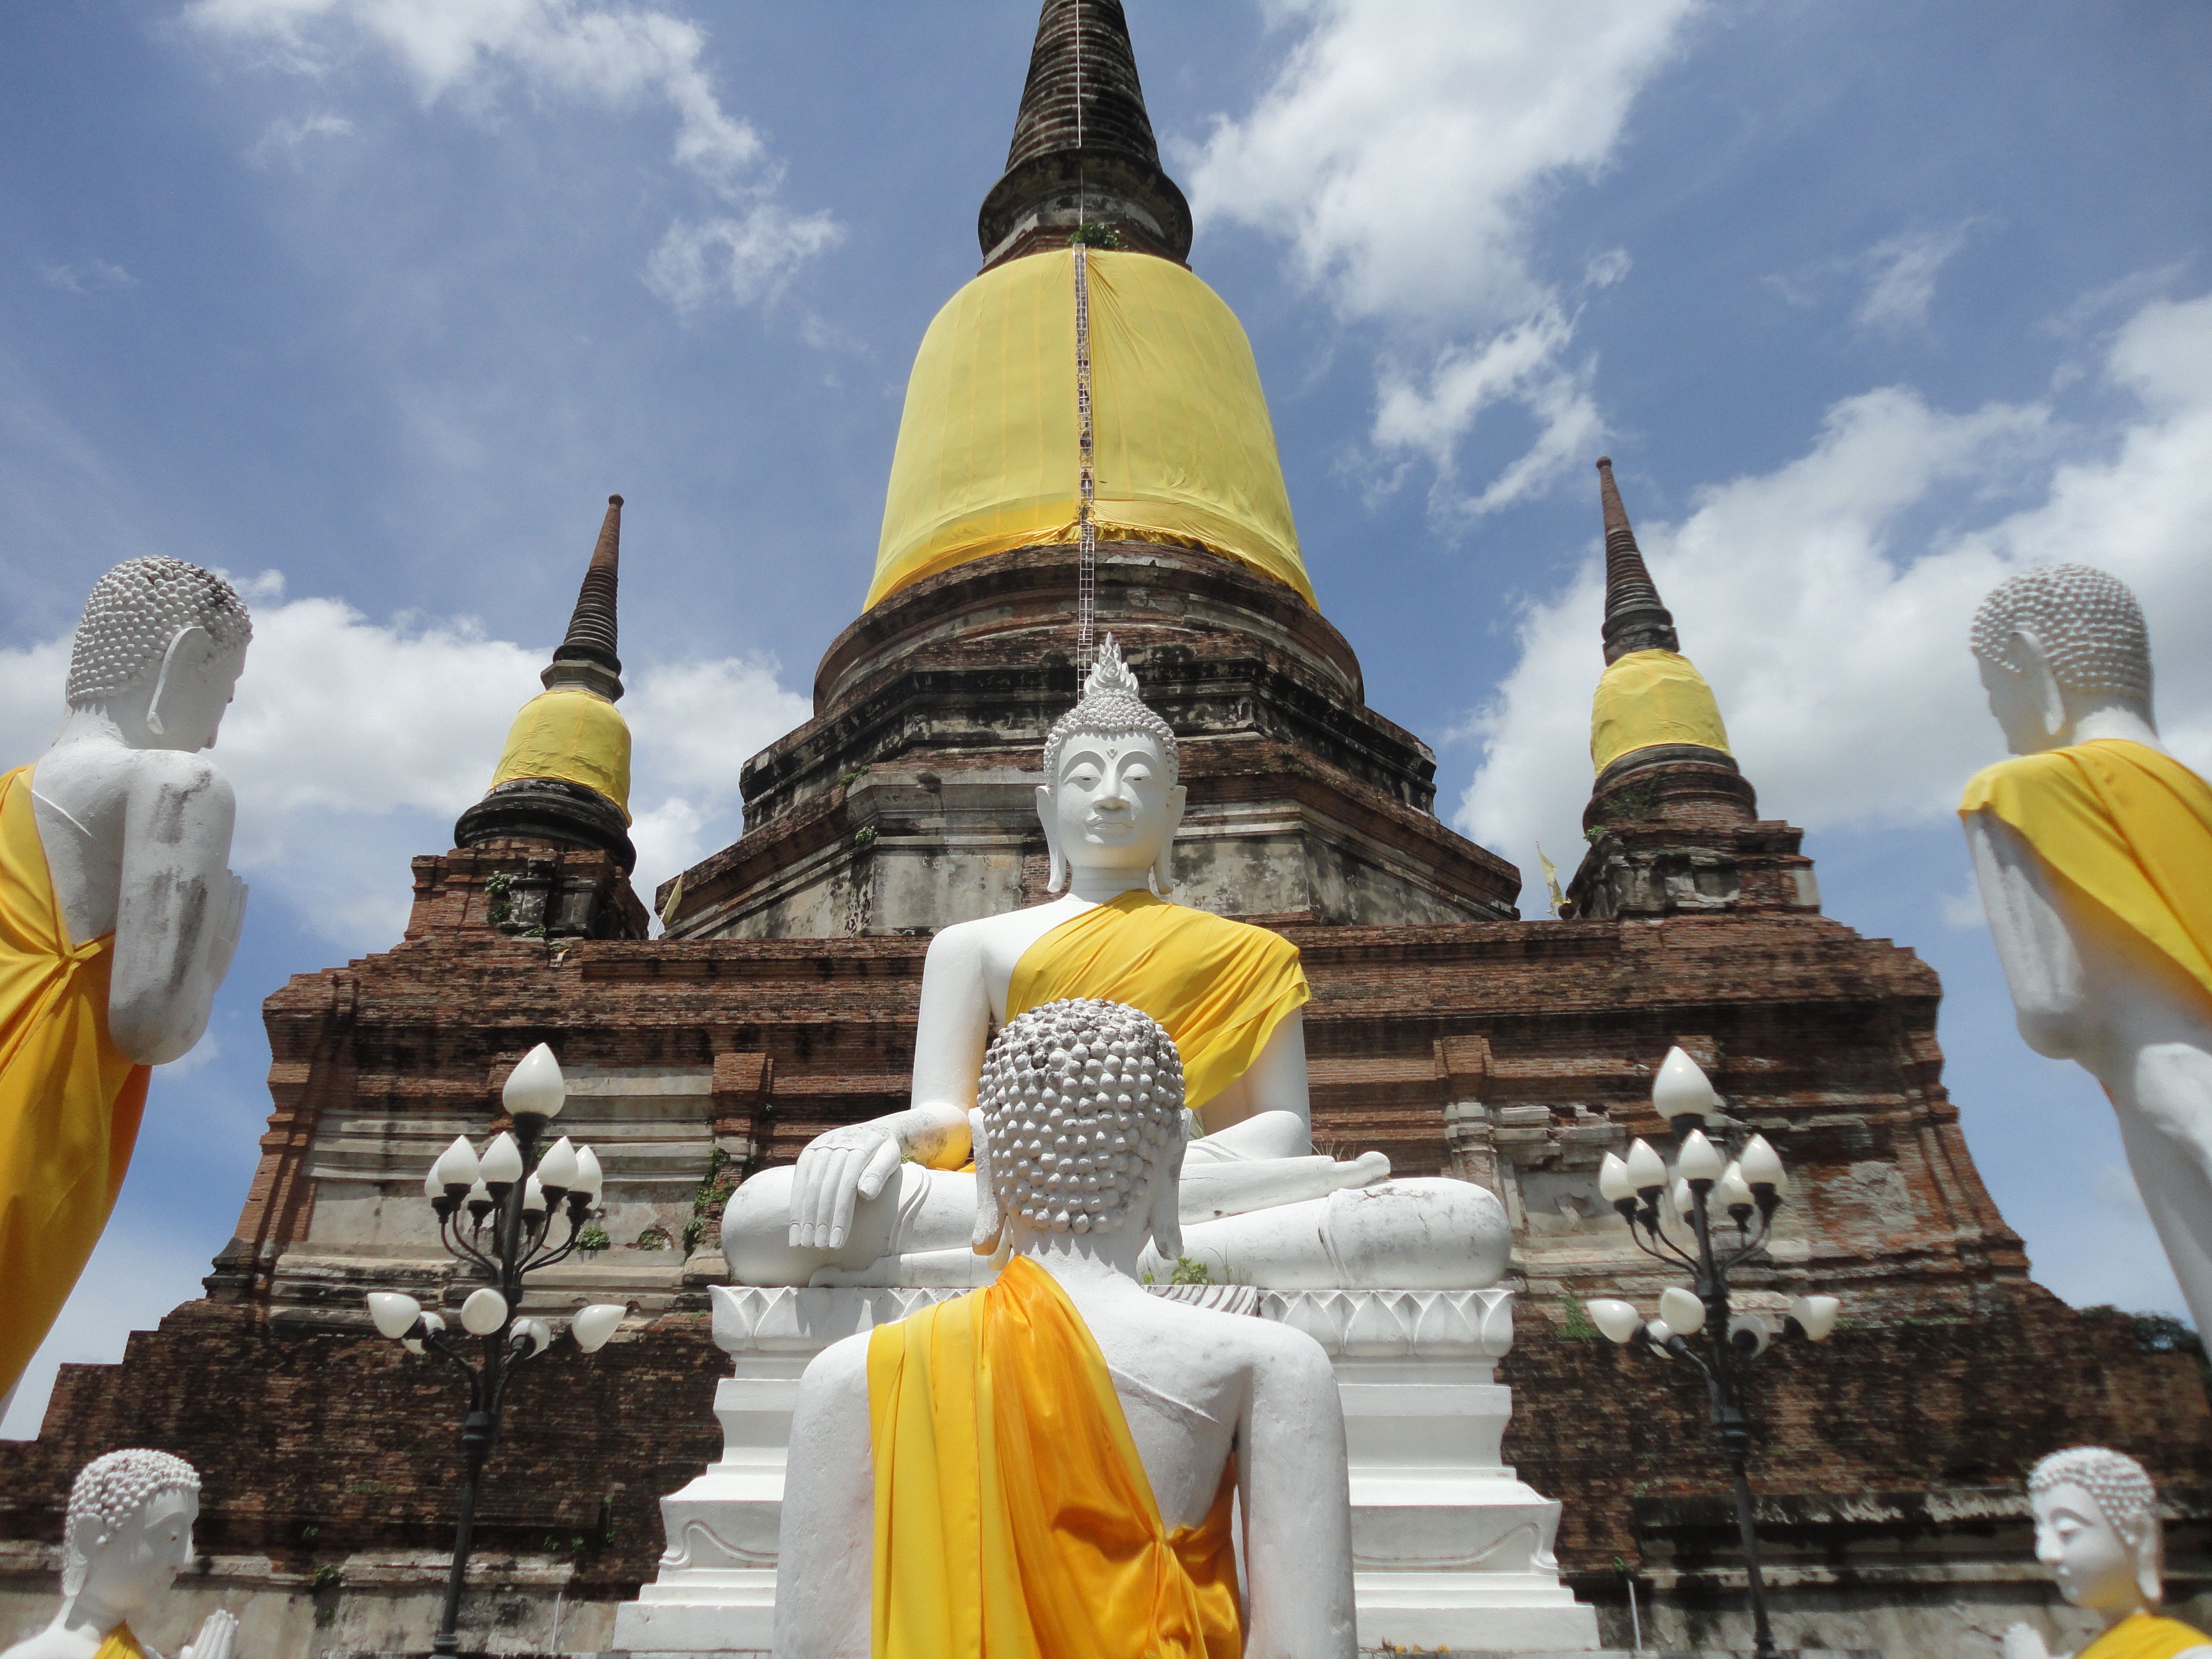 Buddhist Temple in Thailand | THAILAND | Pinterest | Buddhist temple ...